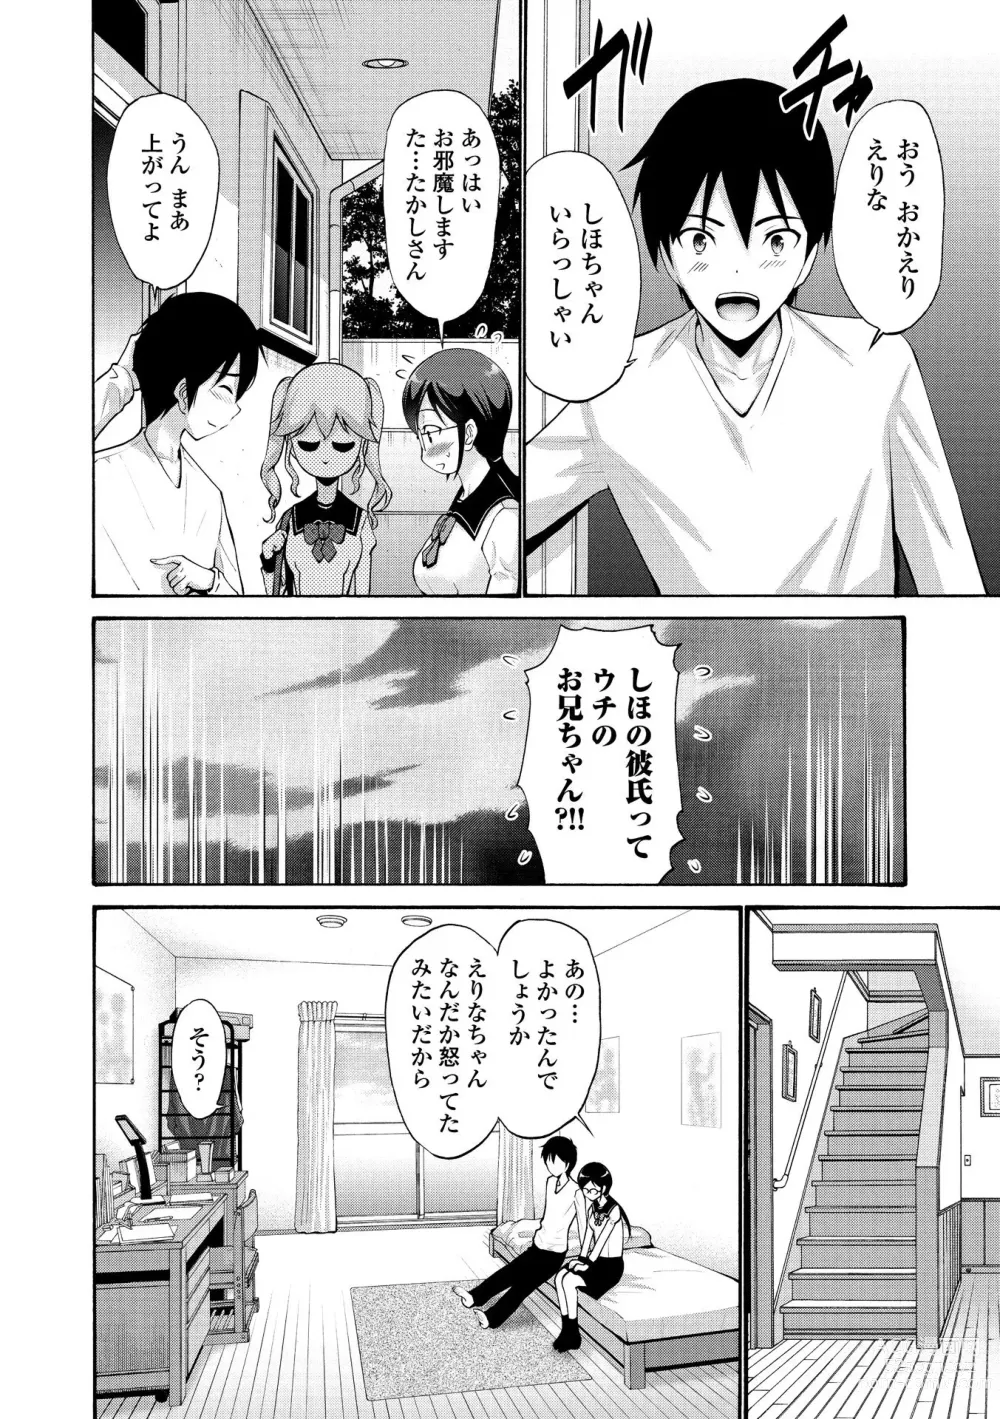 Page 10 of manga Imouto no Naka wa Ii mono da